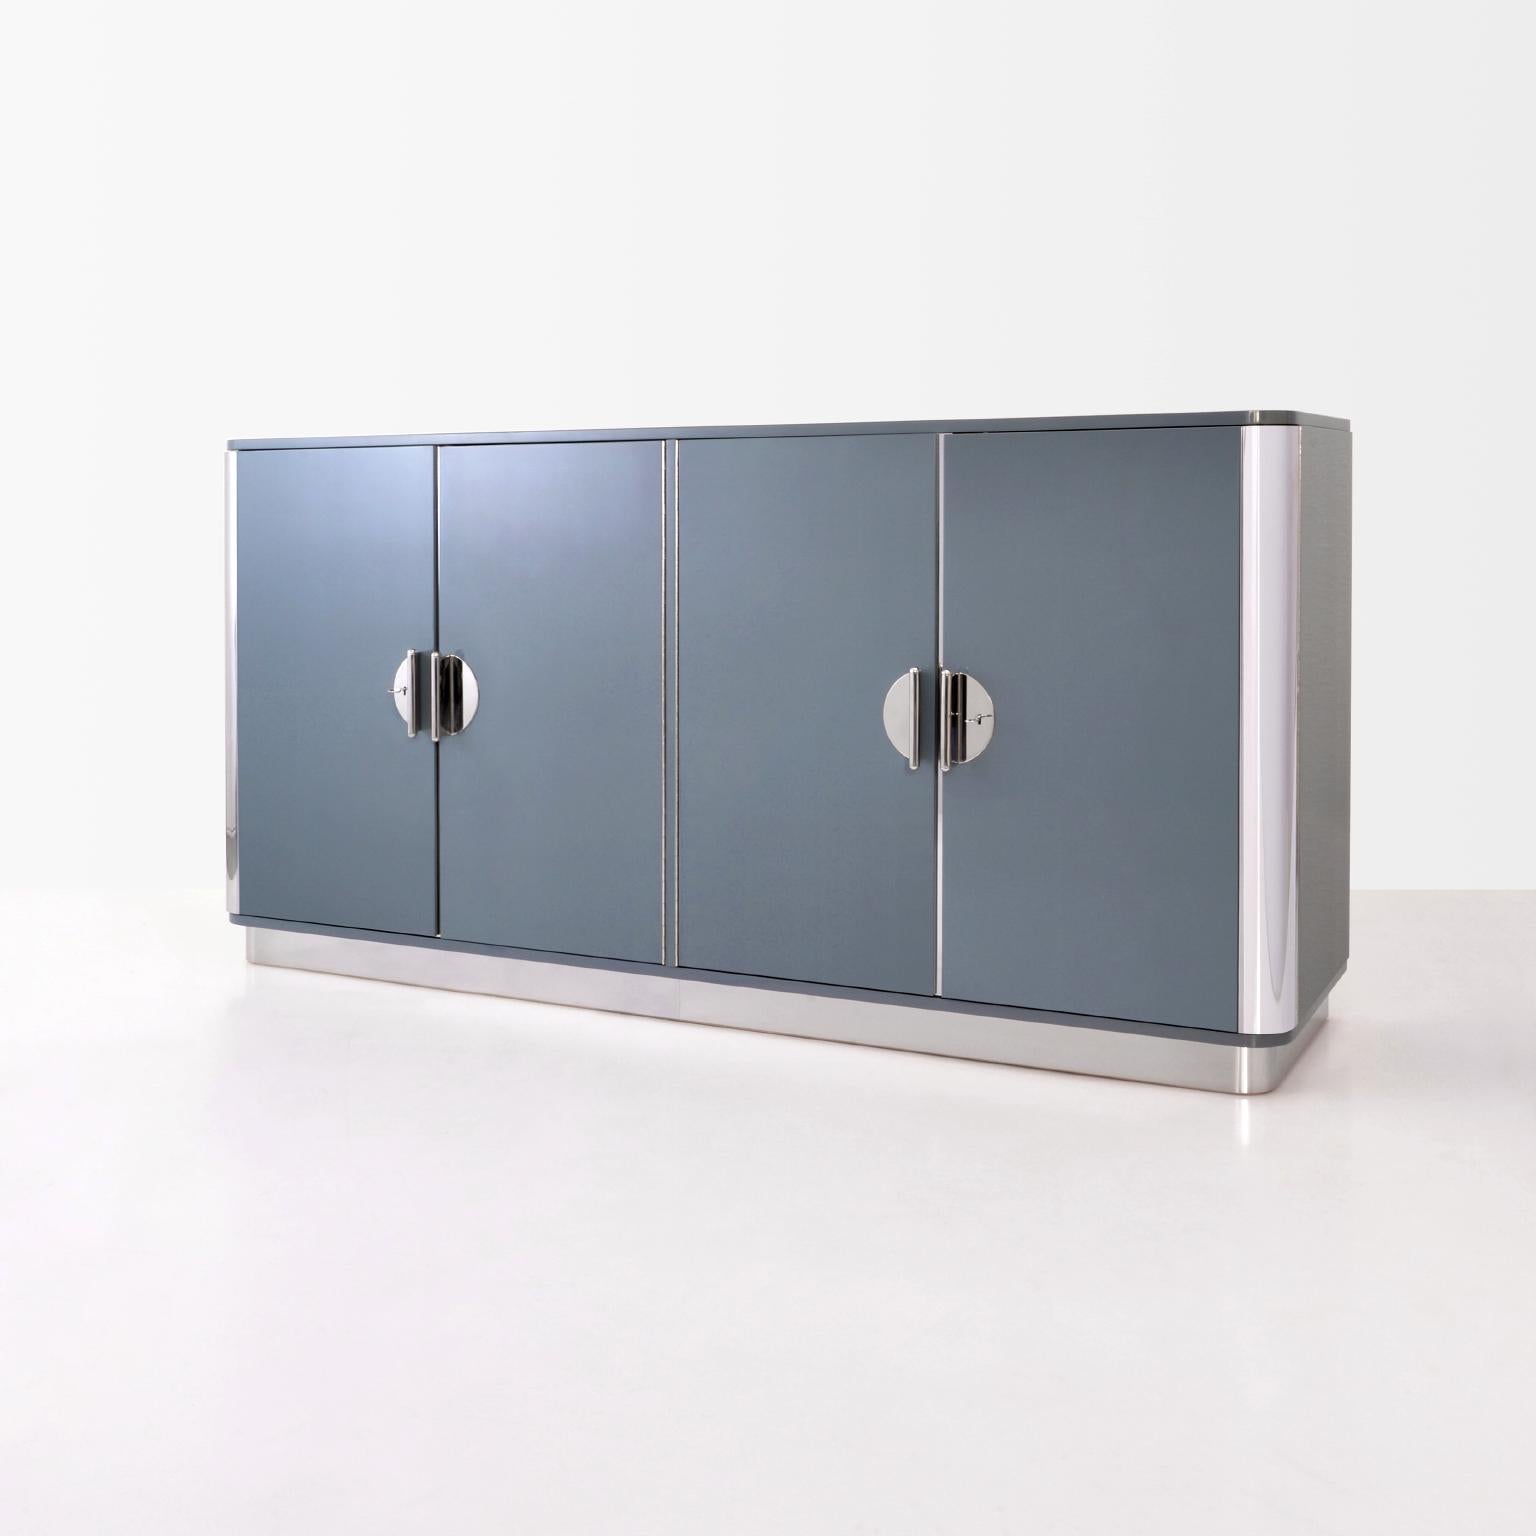 Individuelles viertüriges Sideboard, hergestellt von GMD Berlin, exklusiv präsentiert in unserer Rudolf Vichr Collection.

Diese hochwertigen, handgefertigten Möbel in klassisch-modernem, zeitlosem Design werden aus ausgewählten Materialien nach